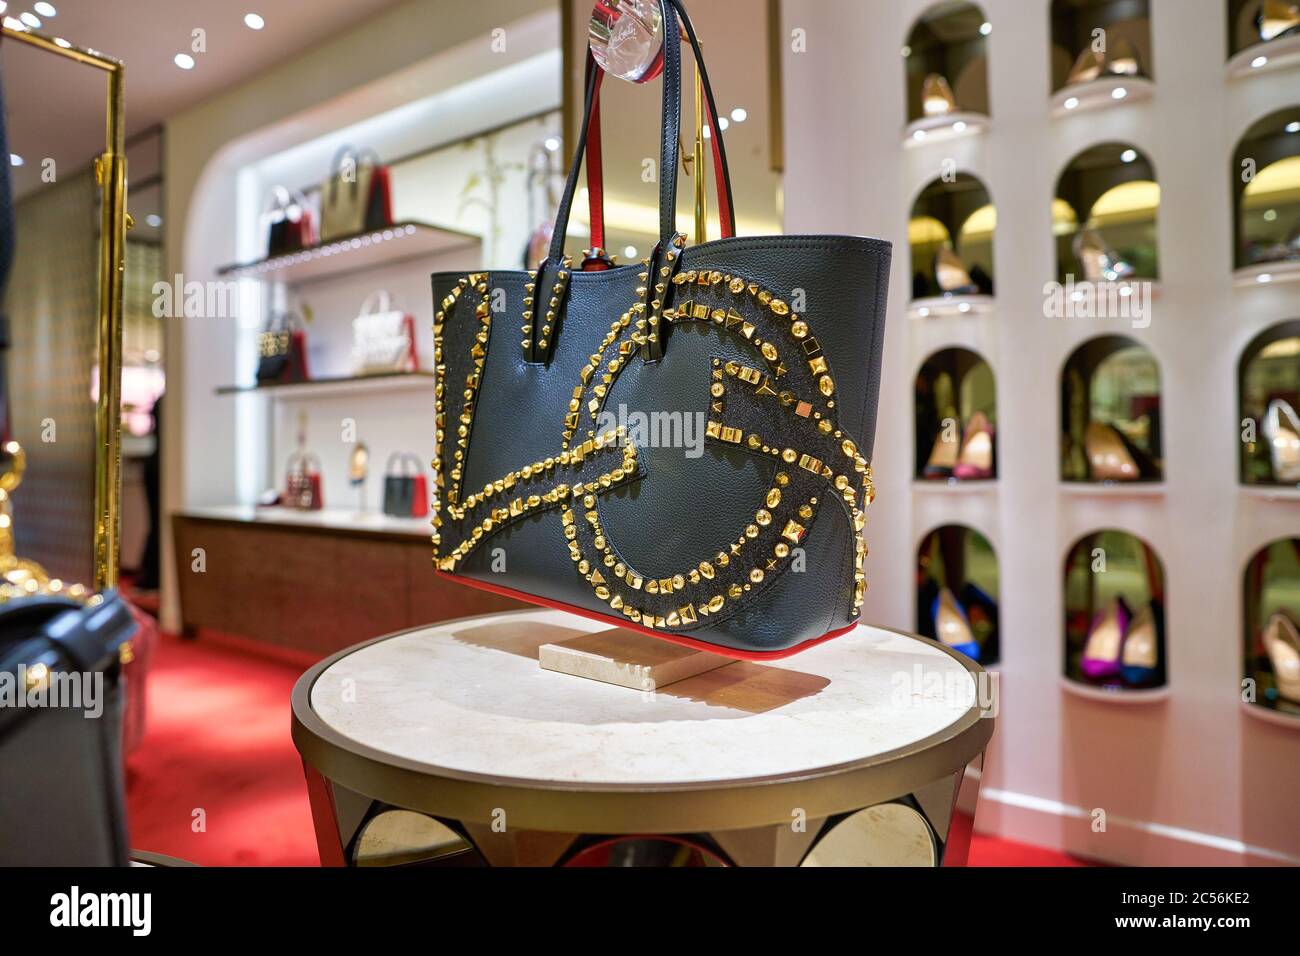 Germany, Berlin. Handbags by Louis Vuitton at KaDeWe department